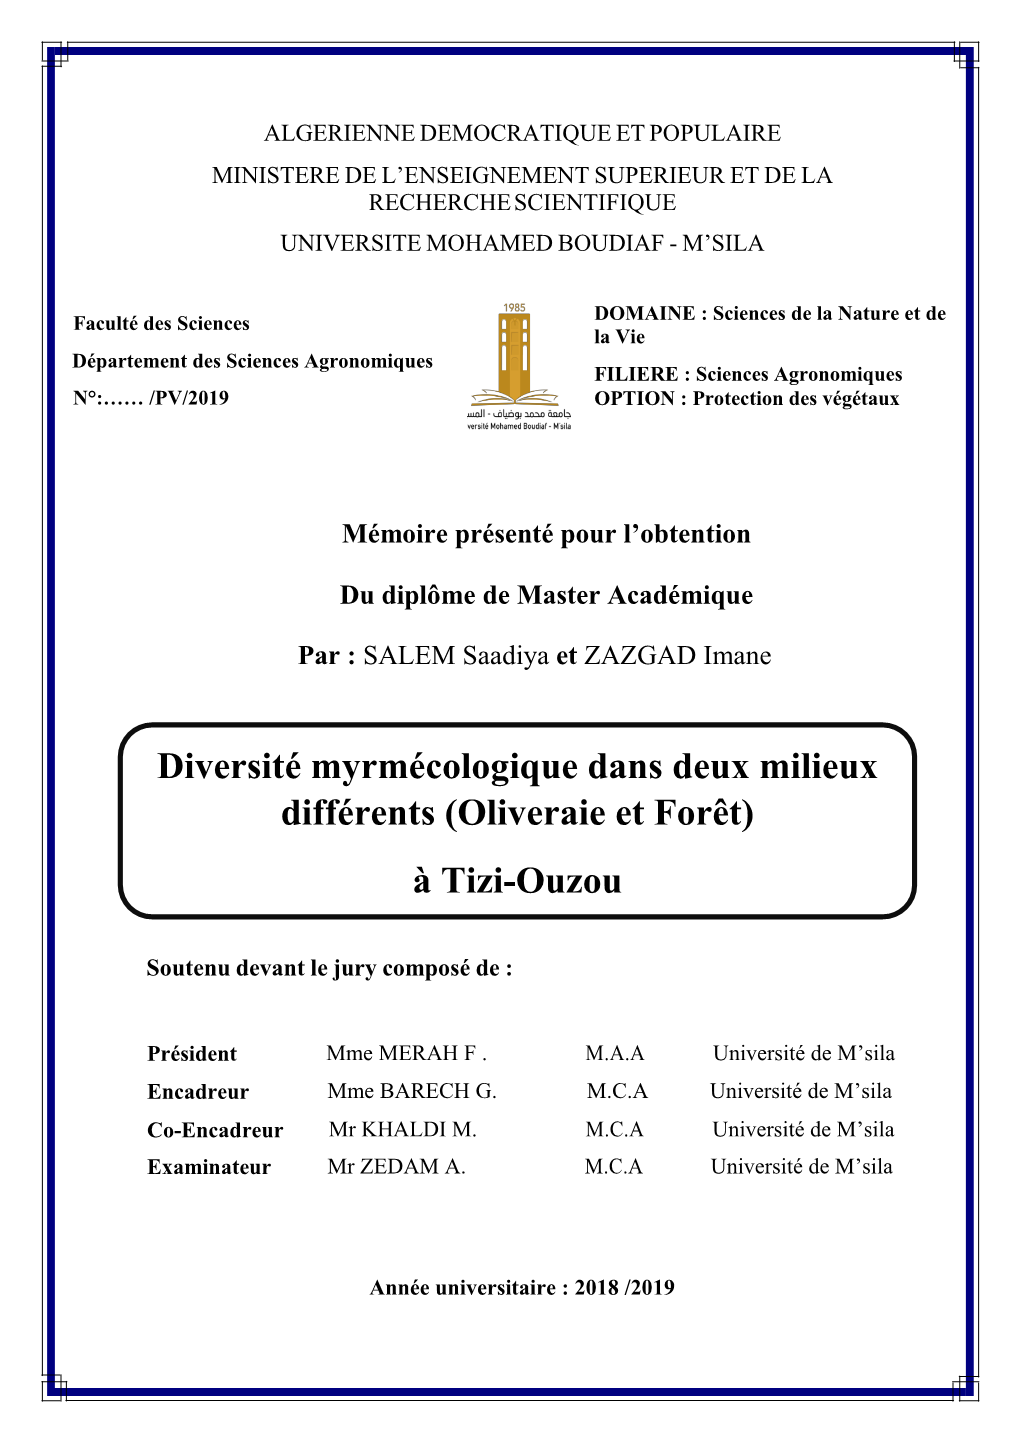 Diversité Myrmécologique Dans Deux Milieux Différents (Oliveraie Et Forêt)